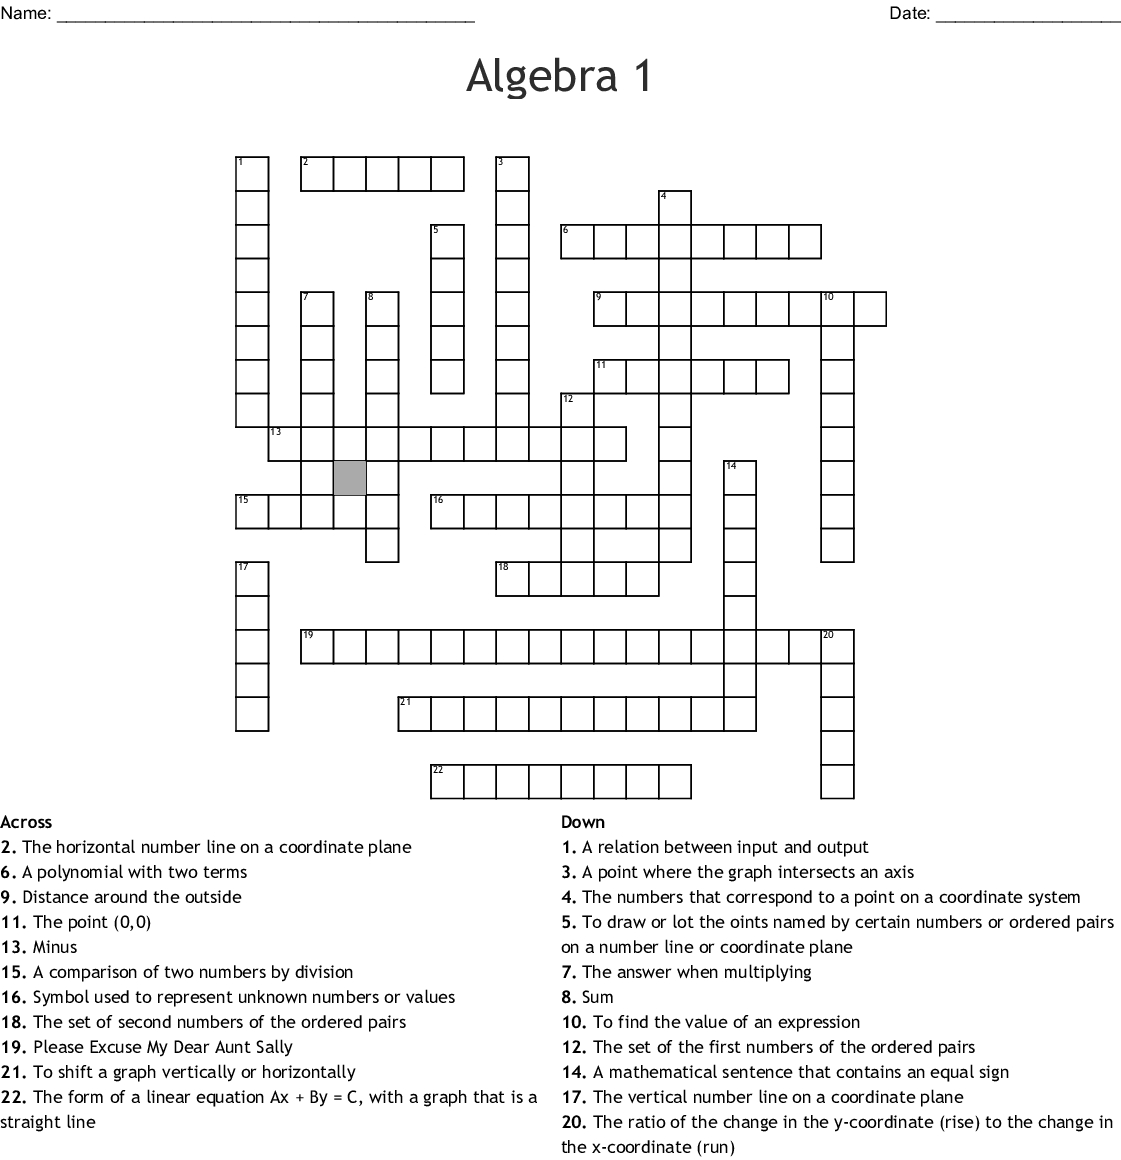 Algebra 1 Crossword Wordmint Printable Crossword 1 Printable 